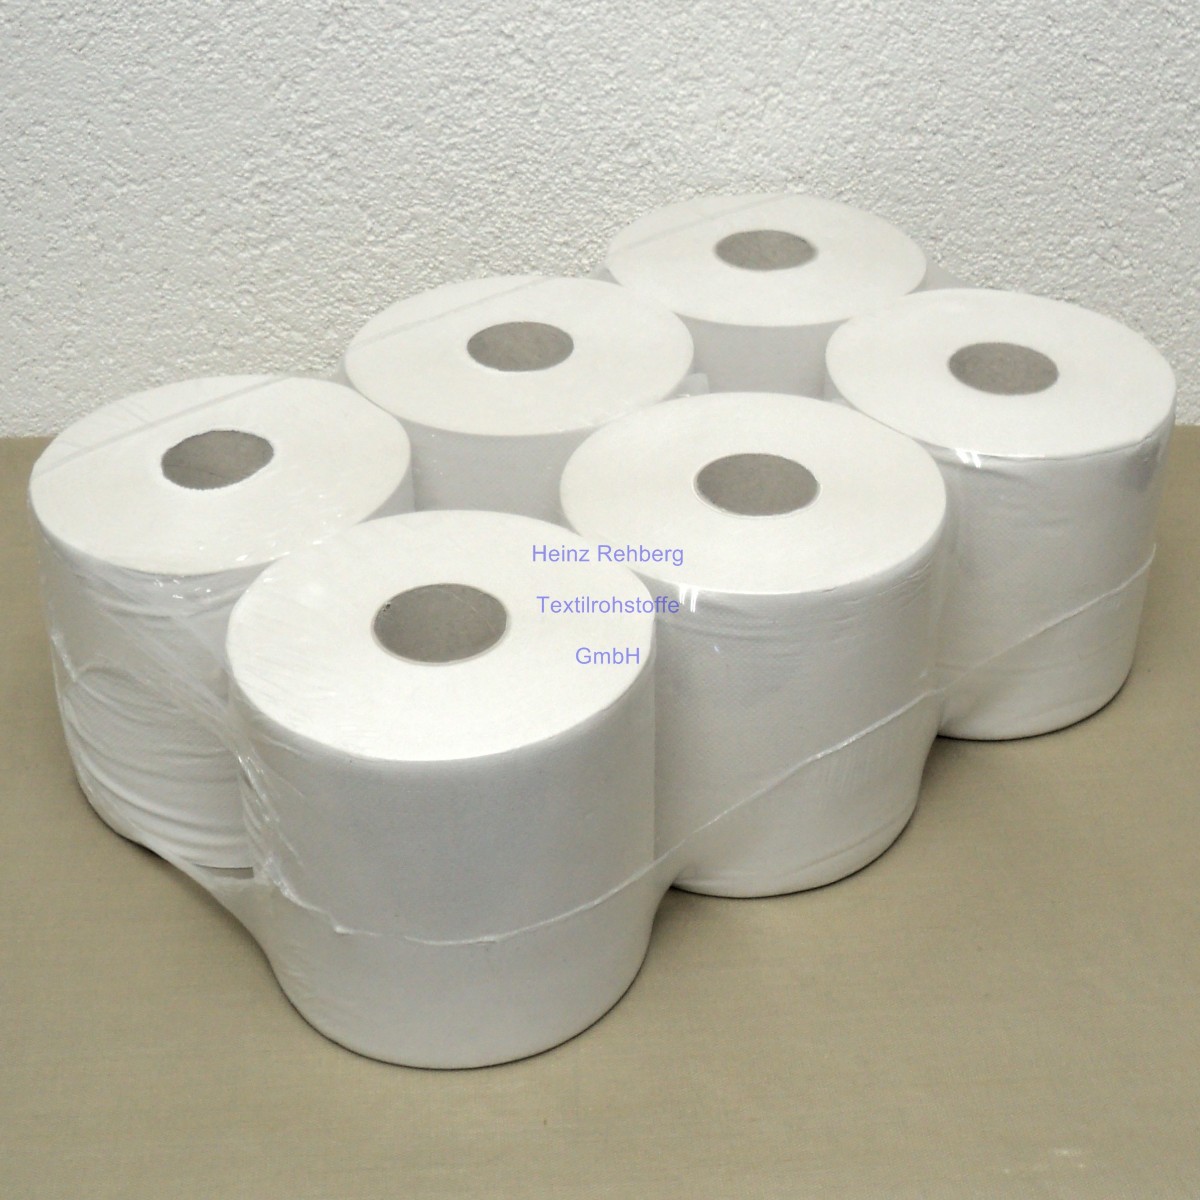 Wischtuchrolle rohweiss Tissue-Recycling-Mix Rollenbreite 20 cm 190 m Rollen-Ø 19 cm 1-lagig 30 g/m² Innenabzug  Spiral-Hülse Ø